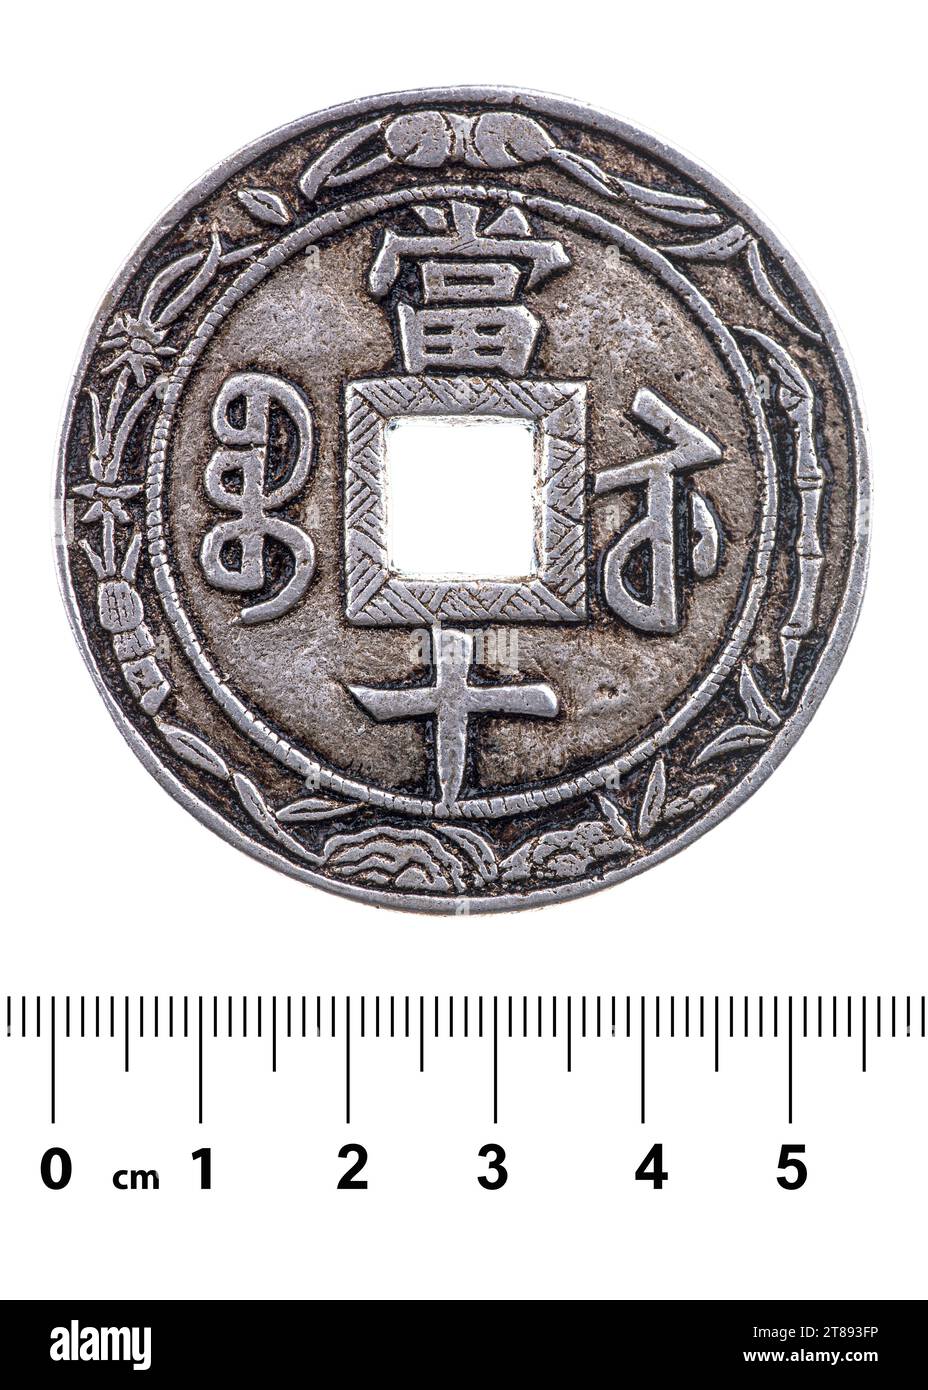 Alte chinesische Münze mit einem quadratischen Loch aus der Qing-Dynastie. Vorderseite. Isoliert auf weiß Stockfoto